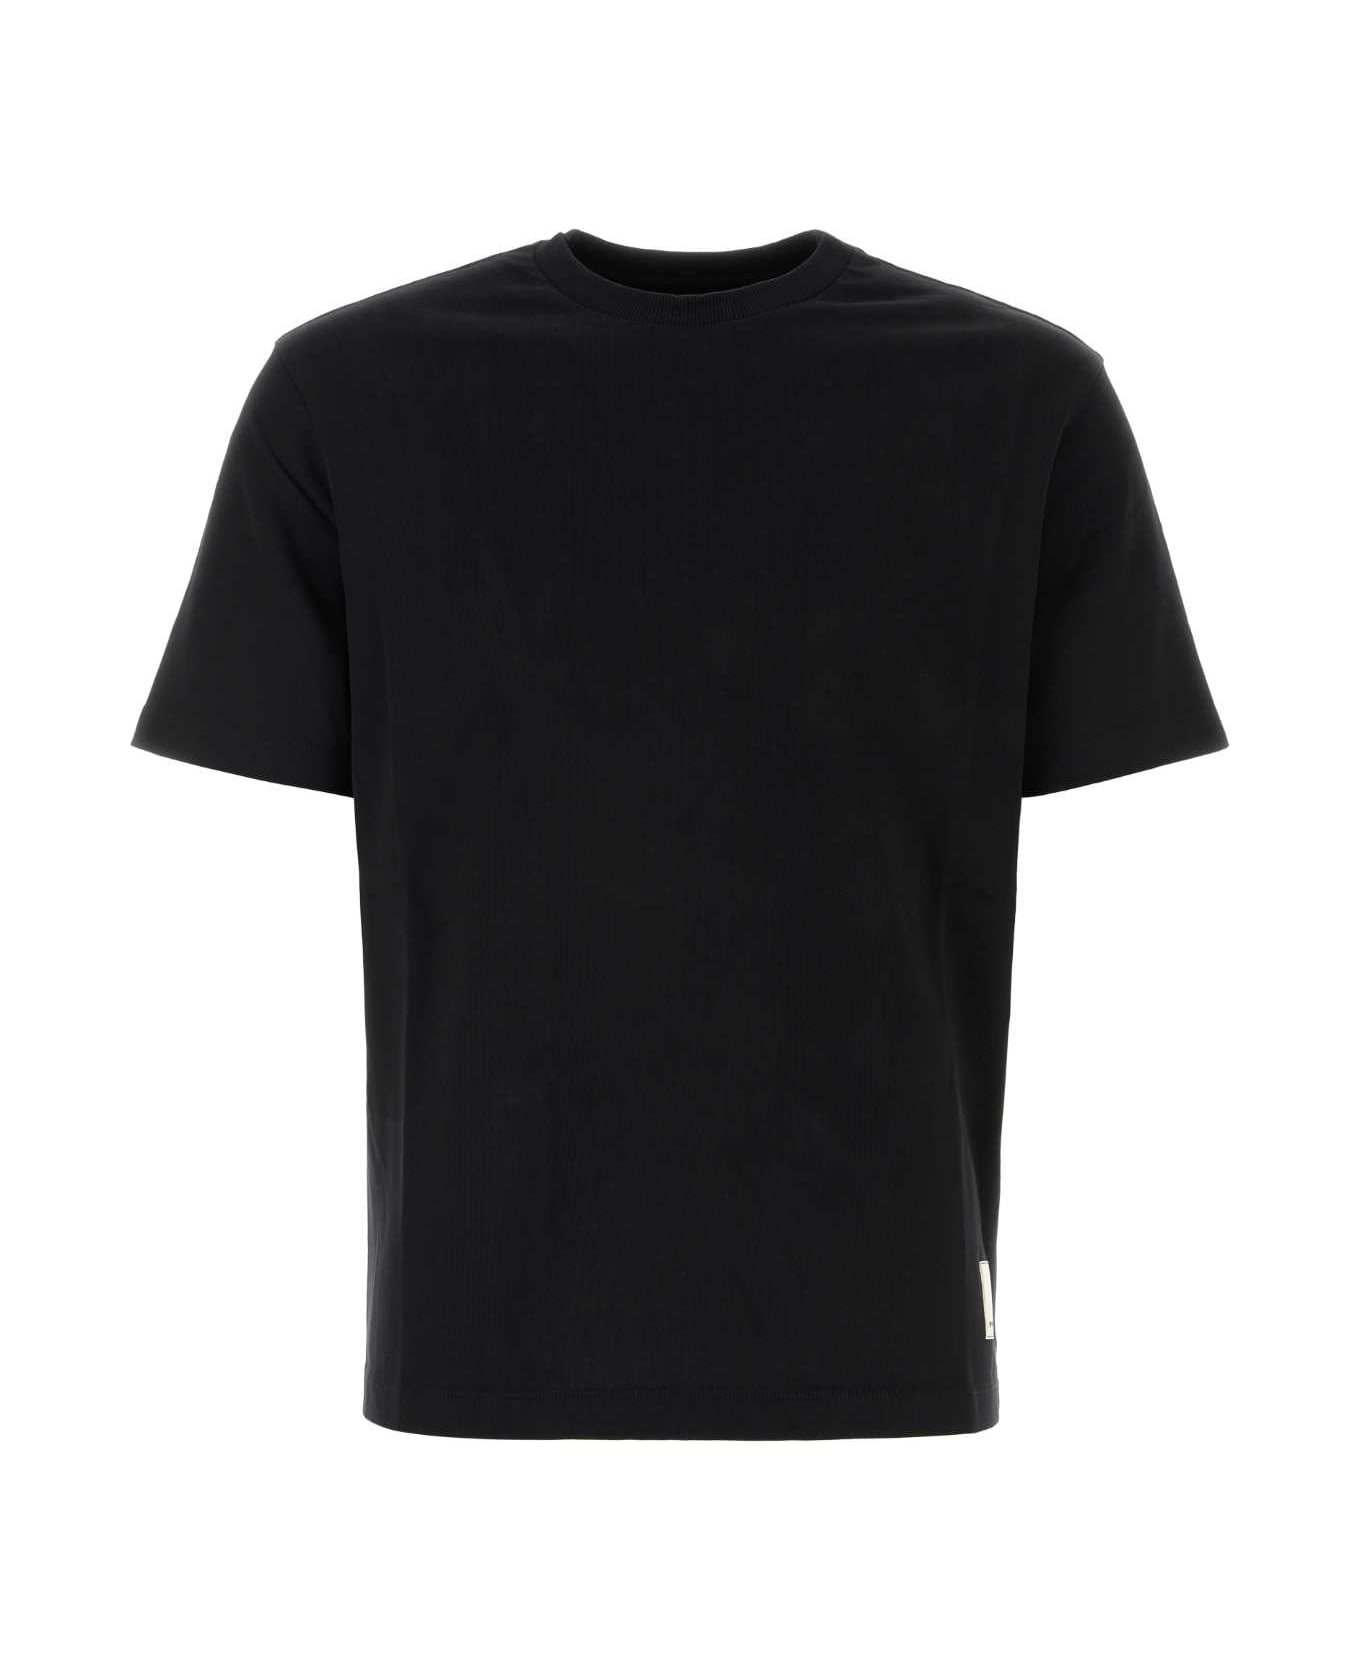 Emporio Armani Black Cotton T-shirt - 0095 シャツ